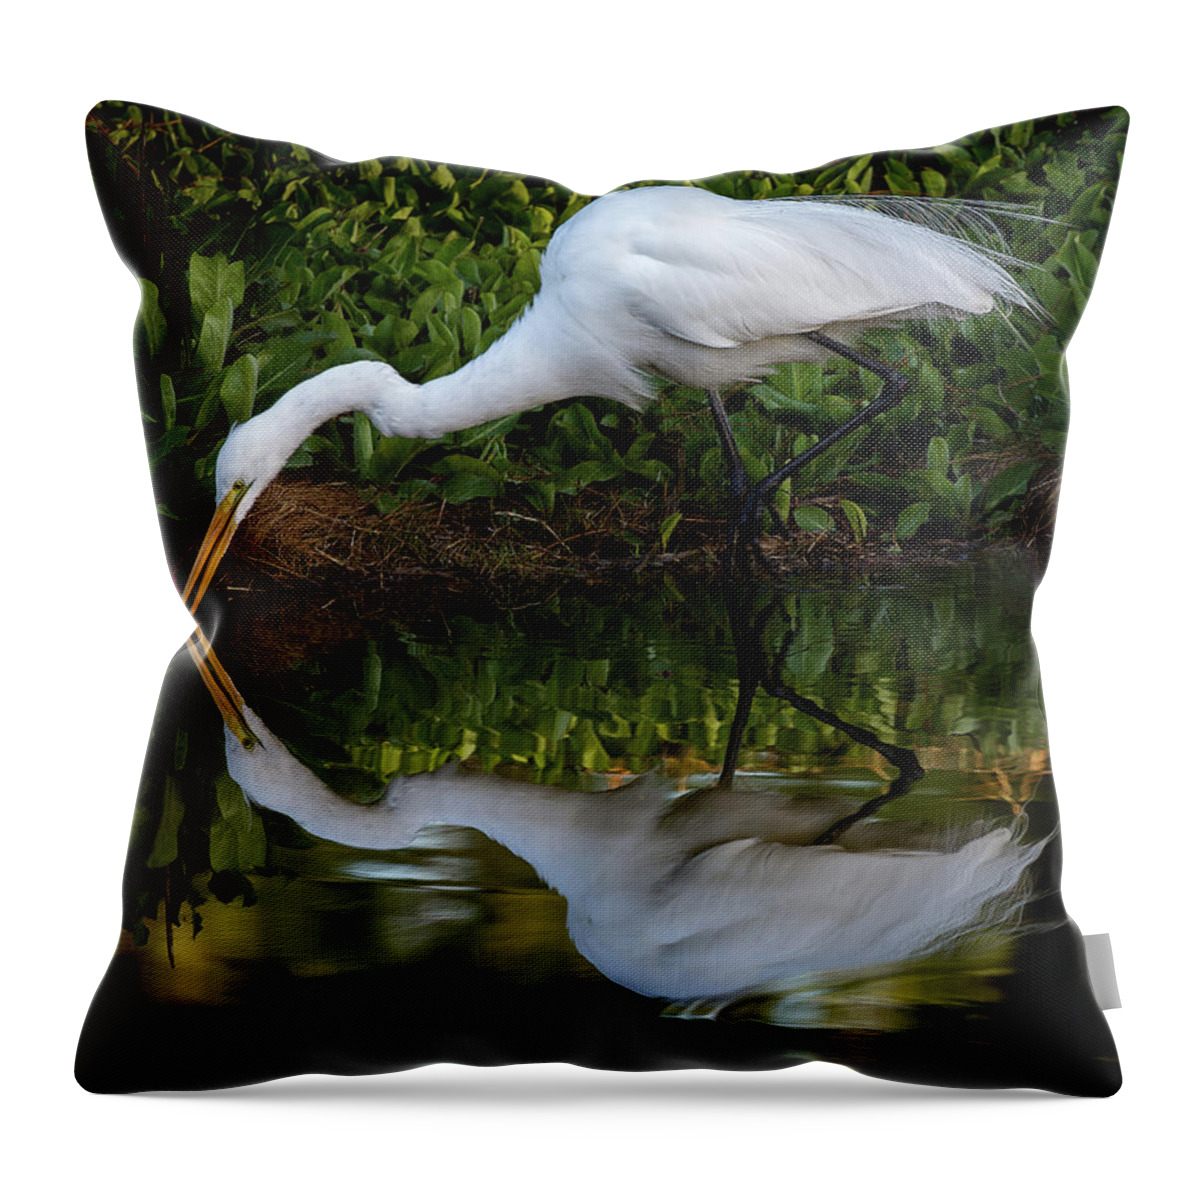 Bird Throw Pillow featuring the photograph Reflections by Bruce Bonnett